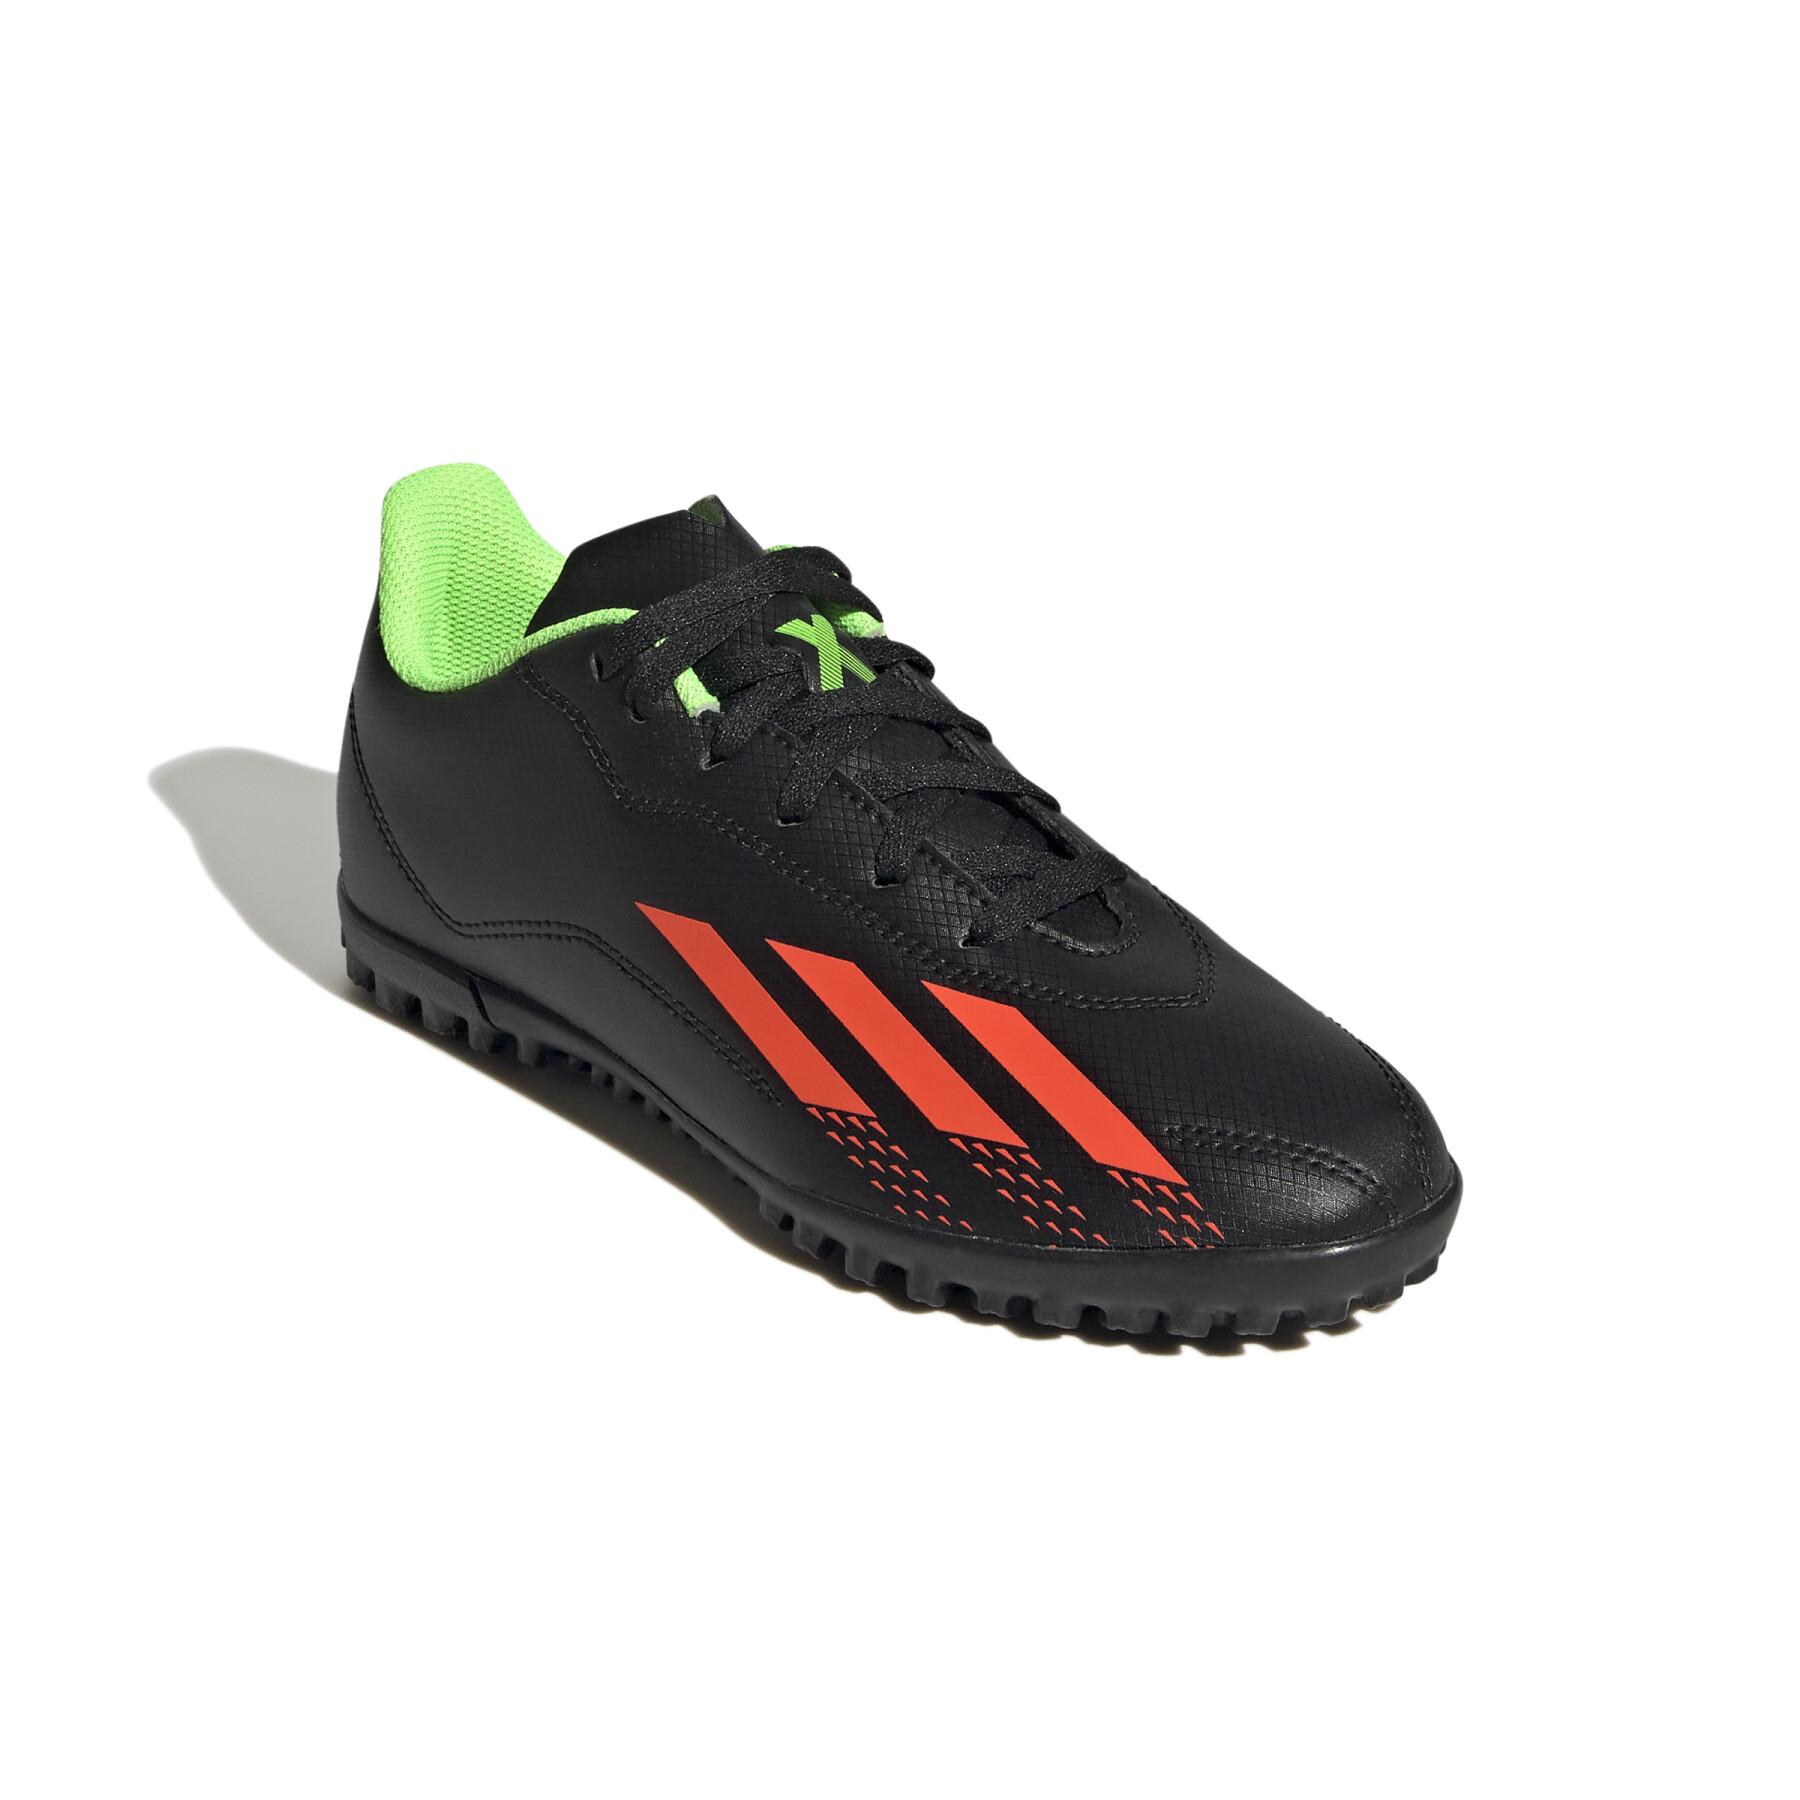 Scarpe da calcio per bambini adidas X Speedportal.4 Turf - Shadowportal